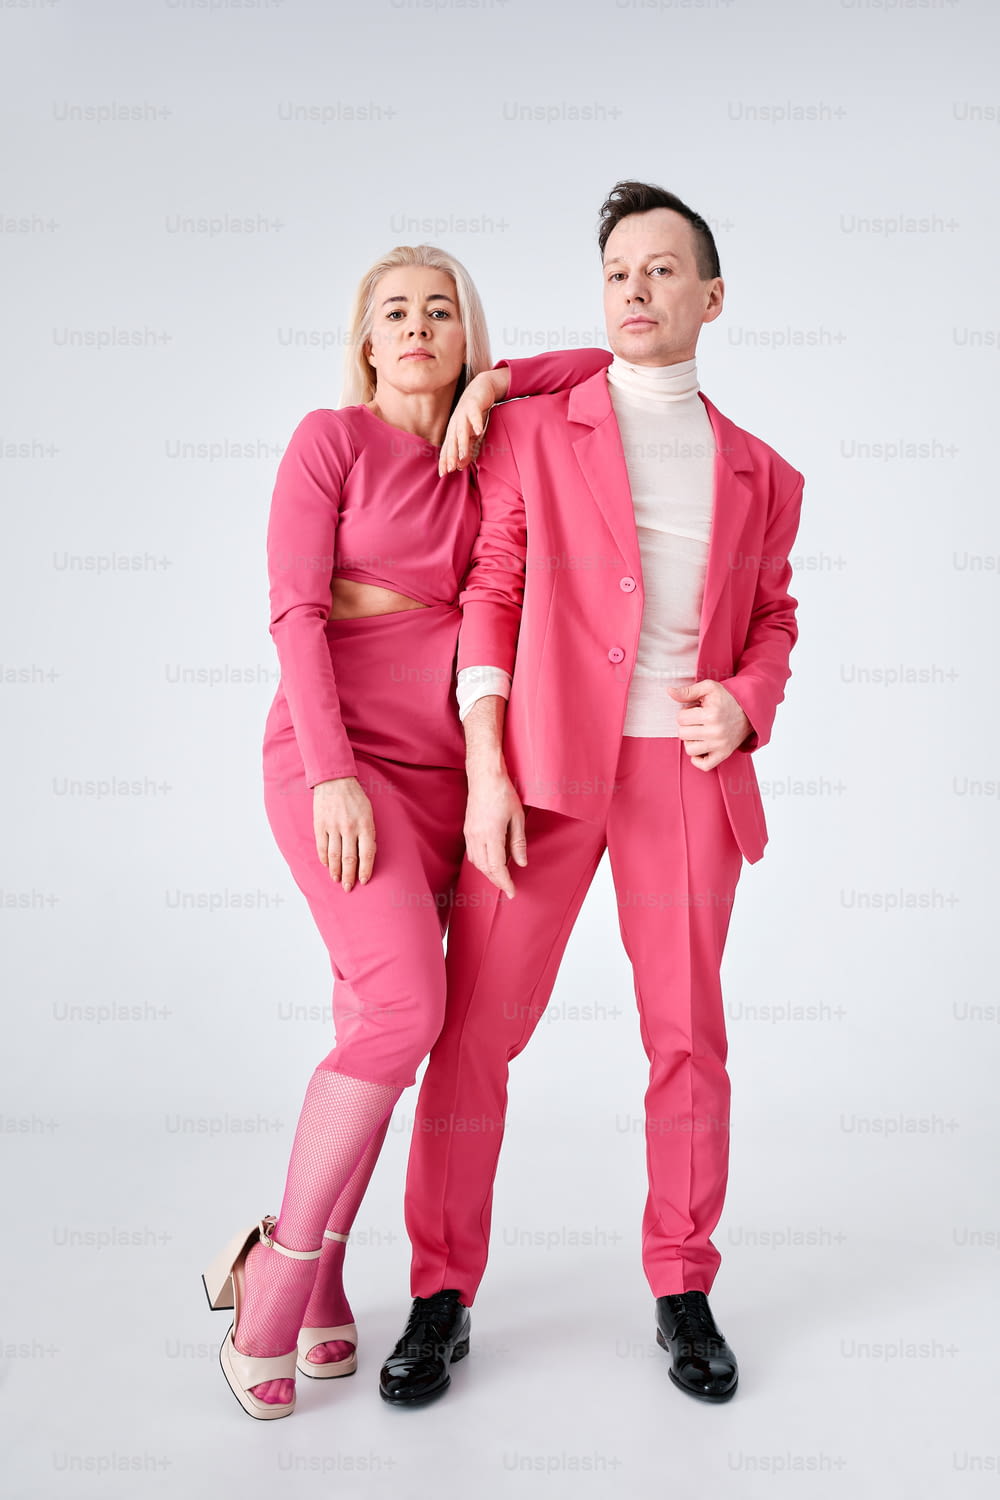 ピンクのスーツを着た男性と白いトップスを着た女性